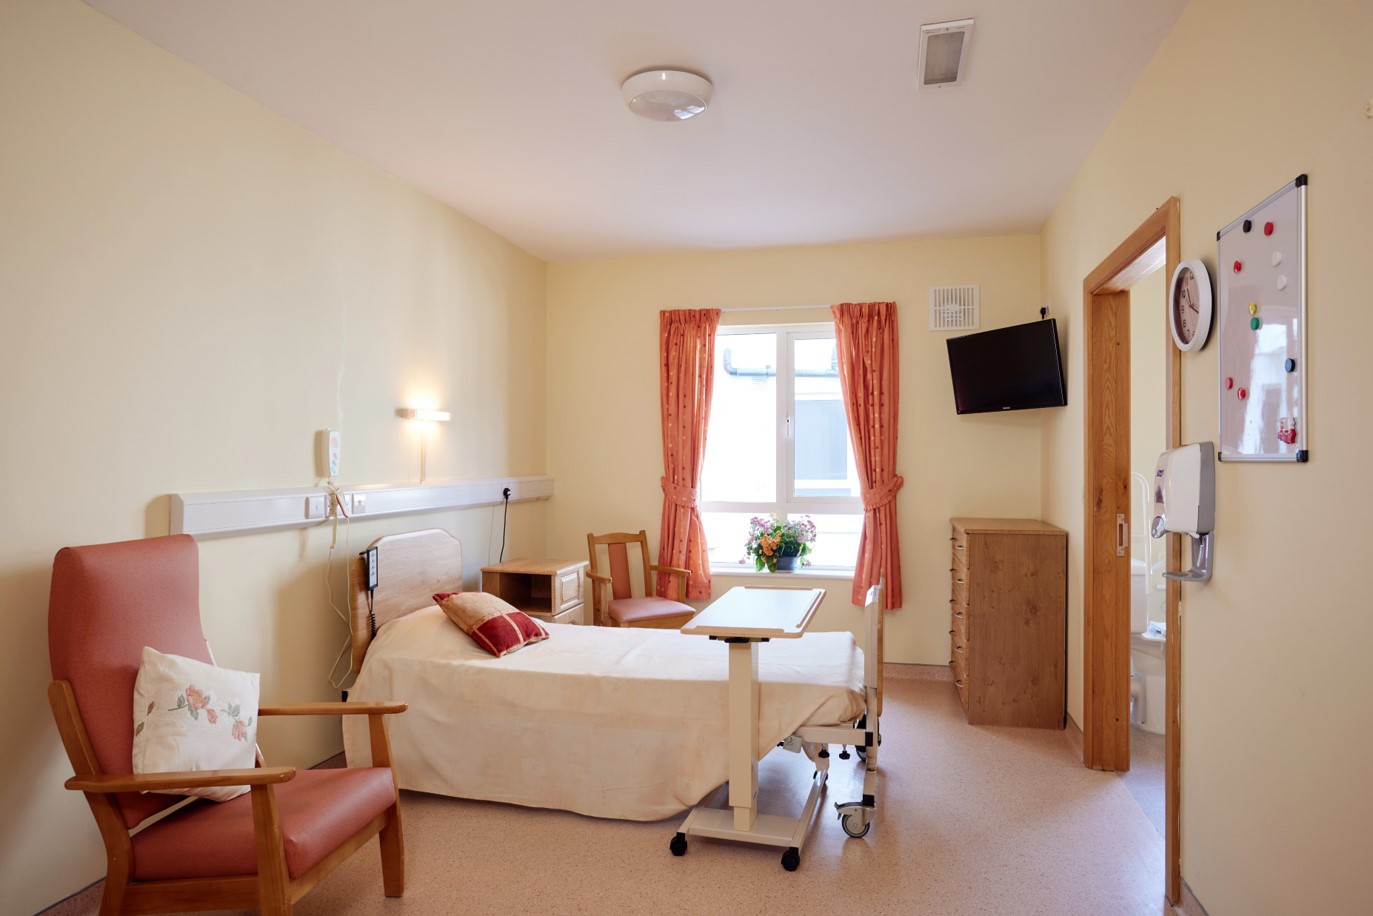 Bedroom in Borris Lodge Nursing Home, Carlow